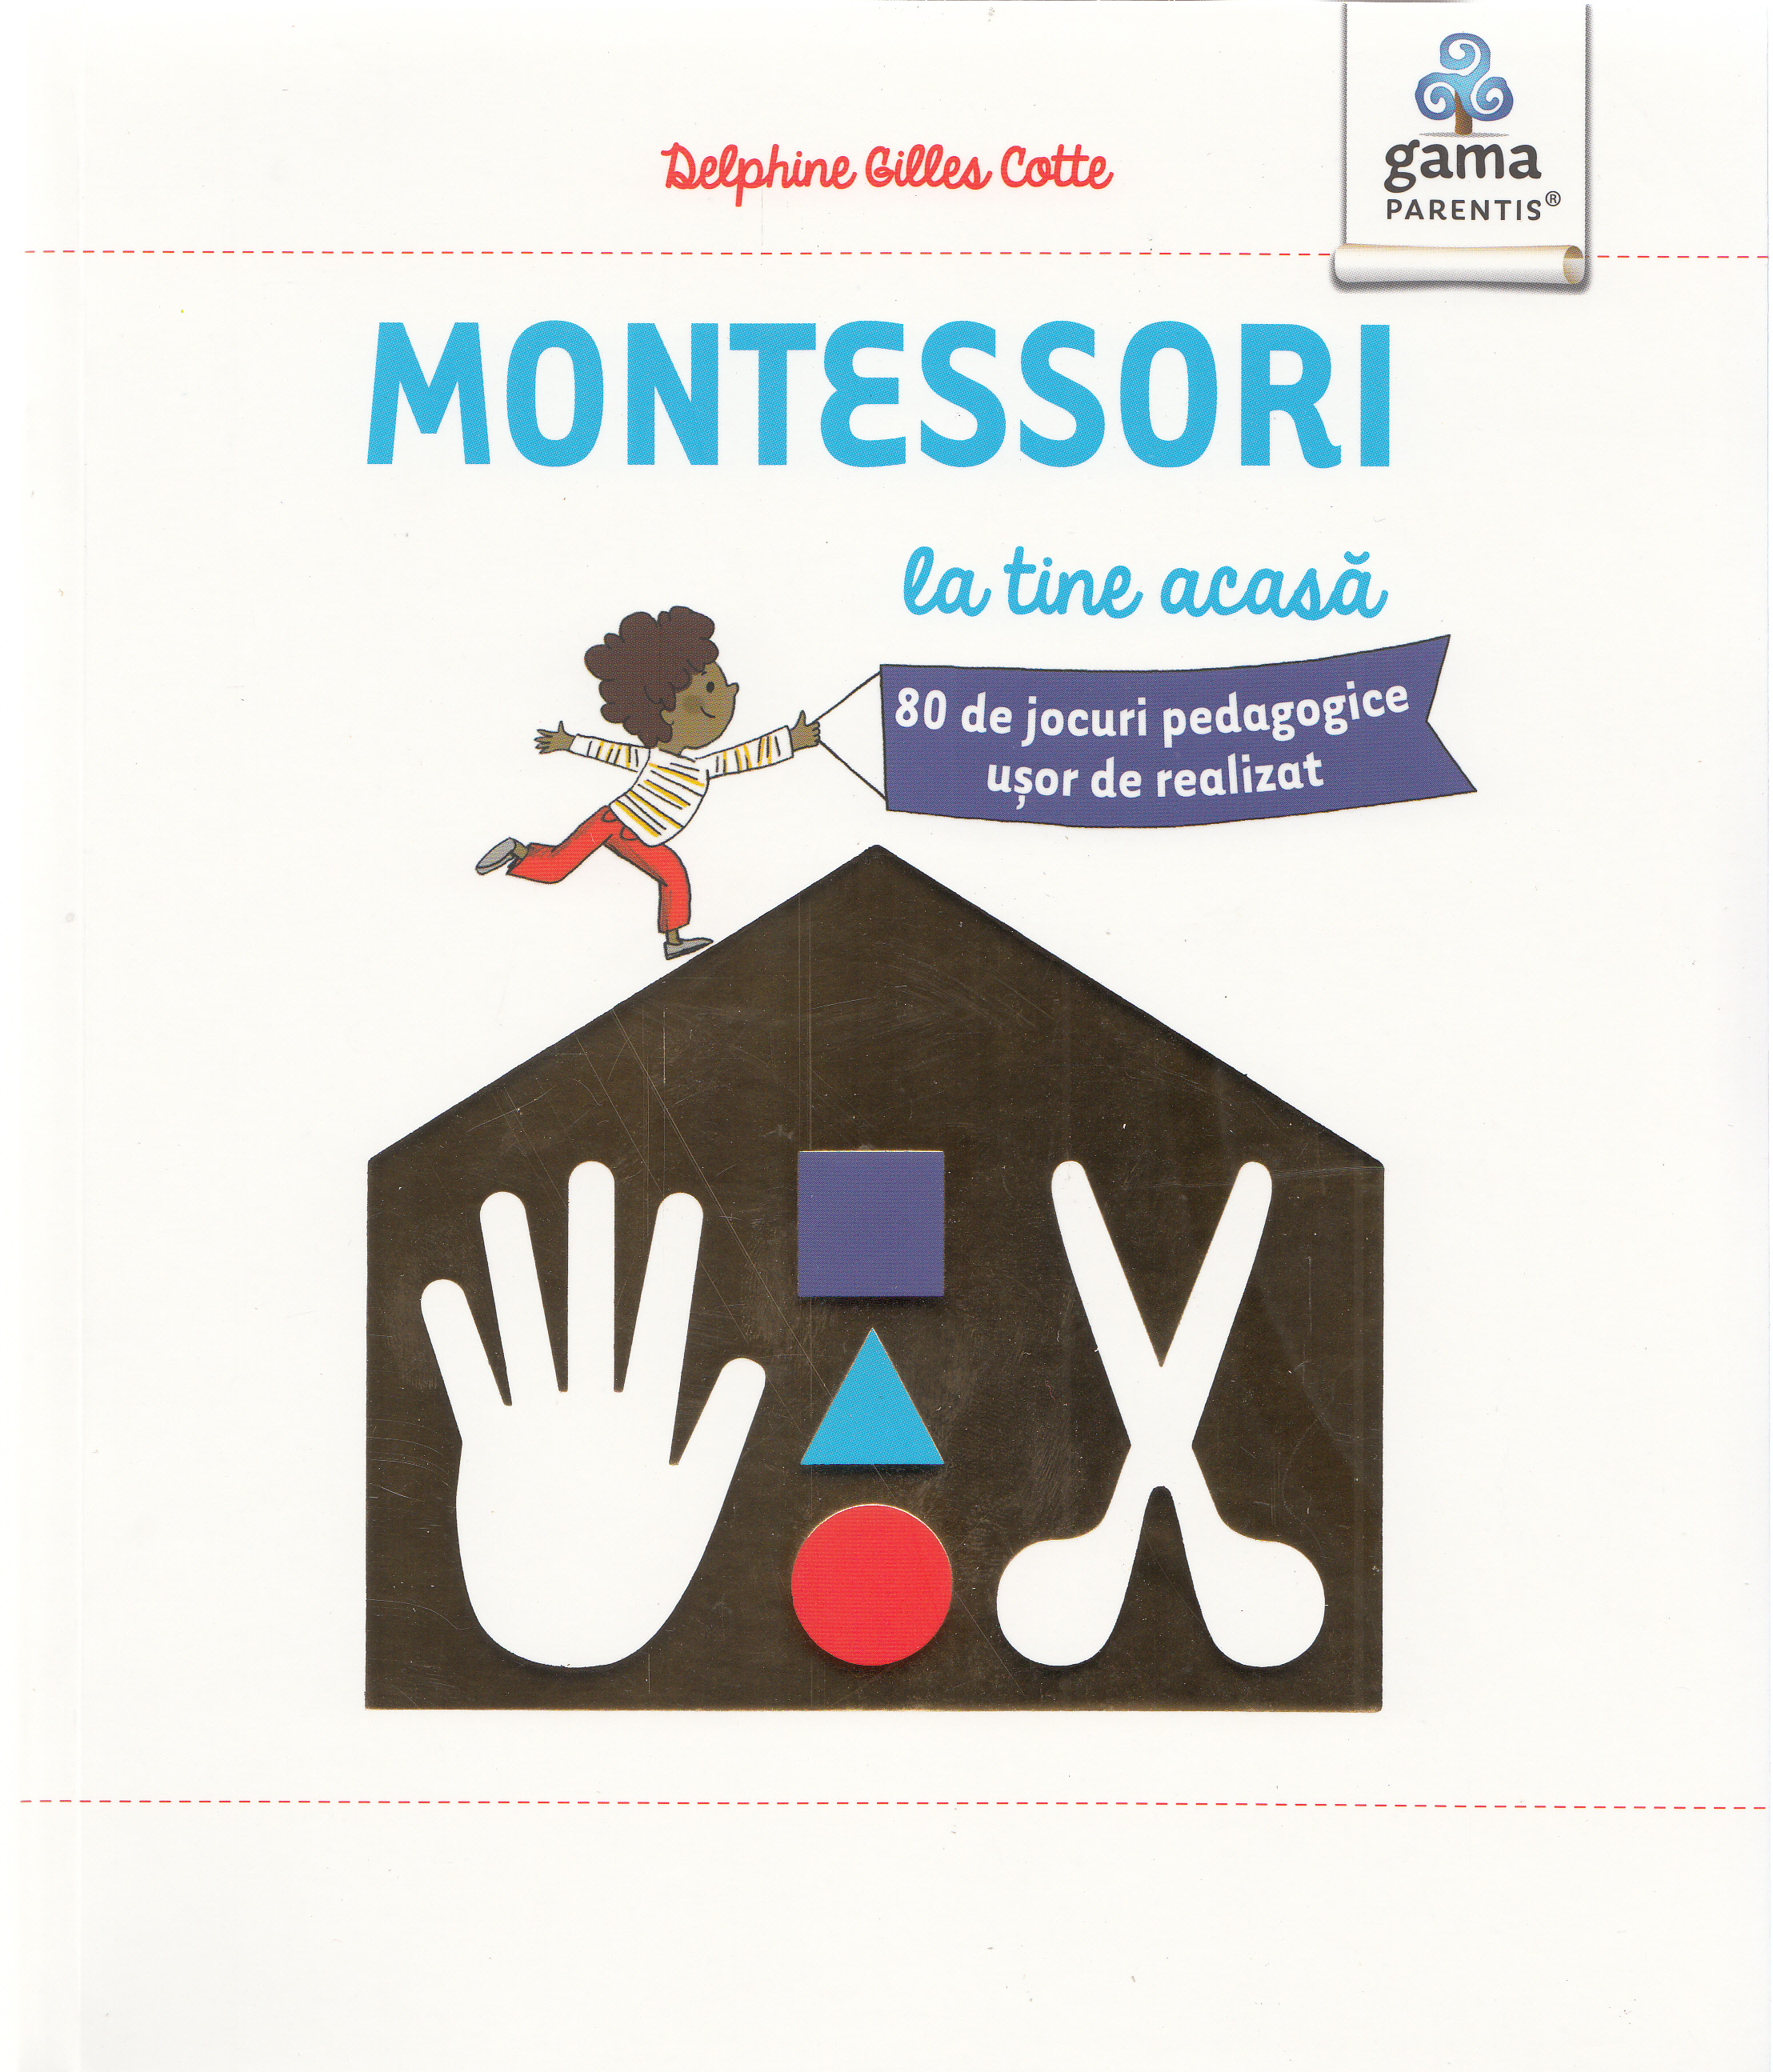 Montessori la tine acasa - Delphine Gilles Cotte